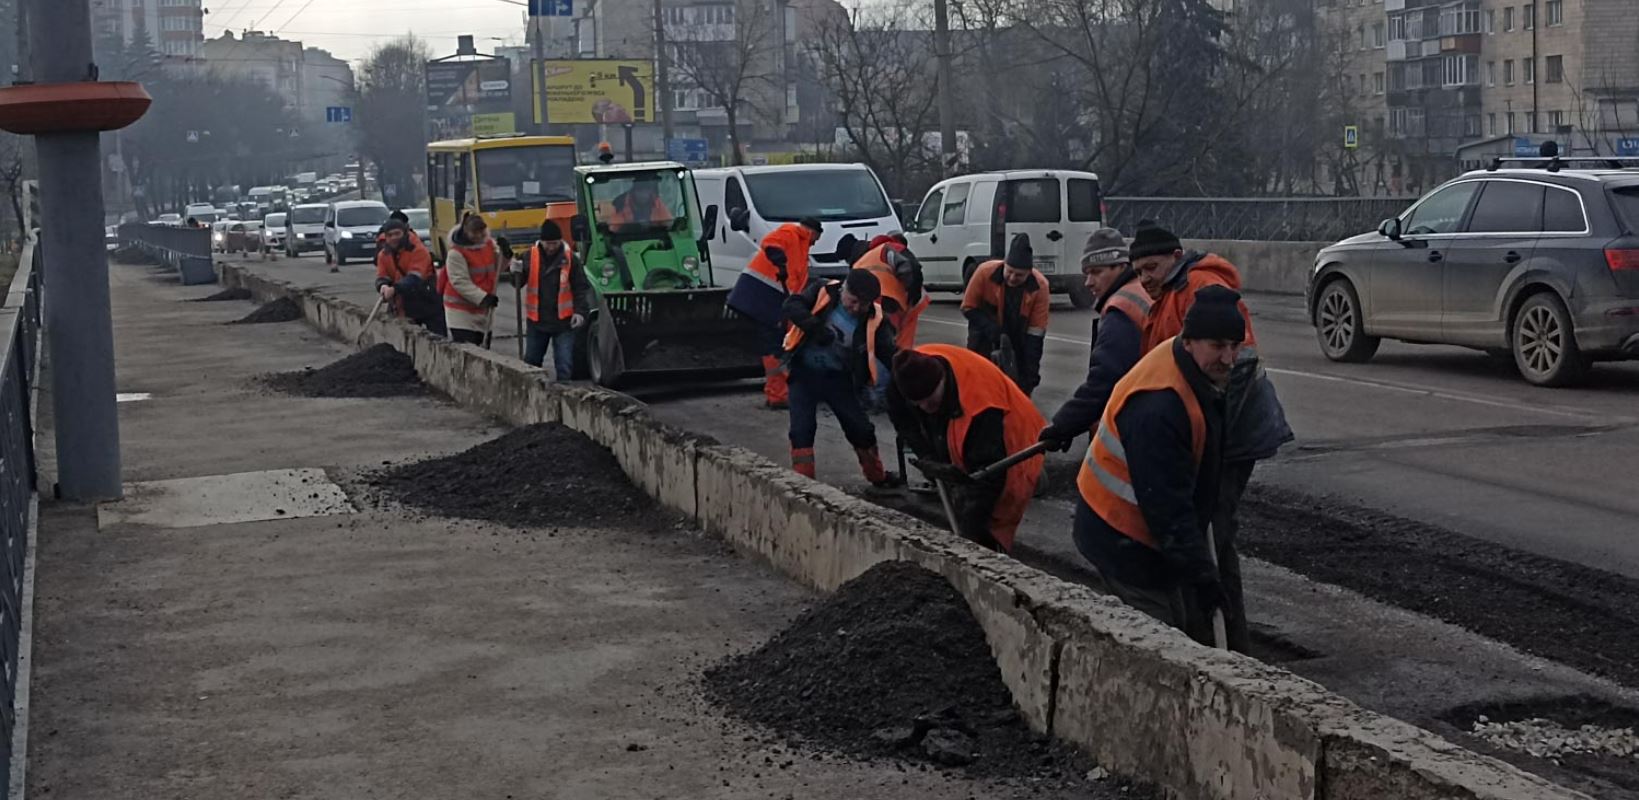 Близько 70% доріг у Франківську потребують ремонту, — Бурко